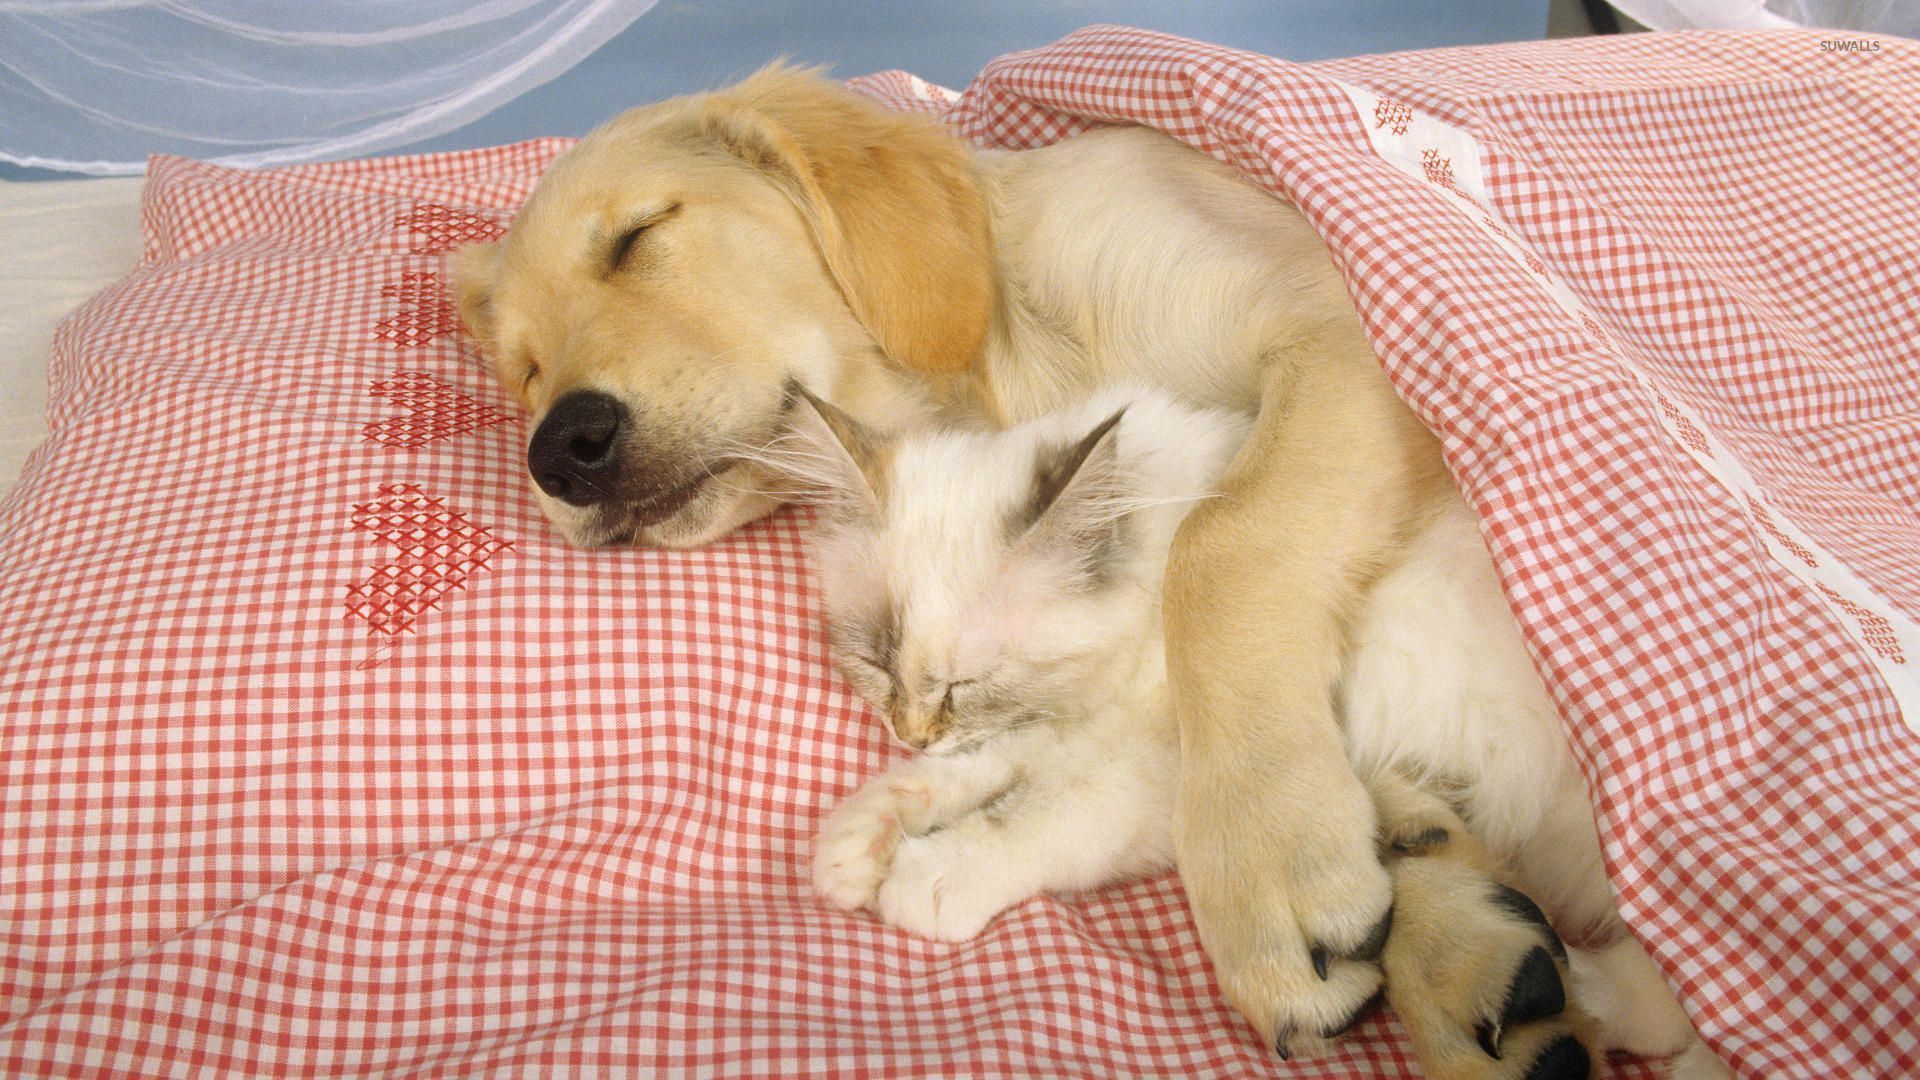 Sleeping Dog Holding A Cute Kitten Wallpaper , HD Wallpaper & Backgrounds